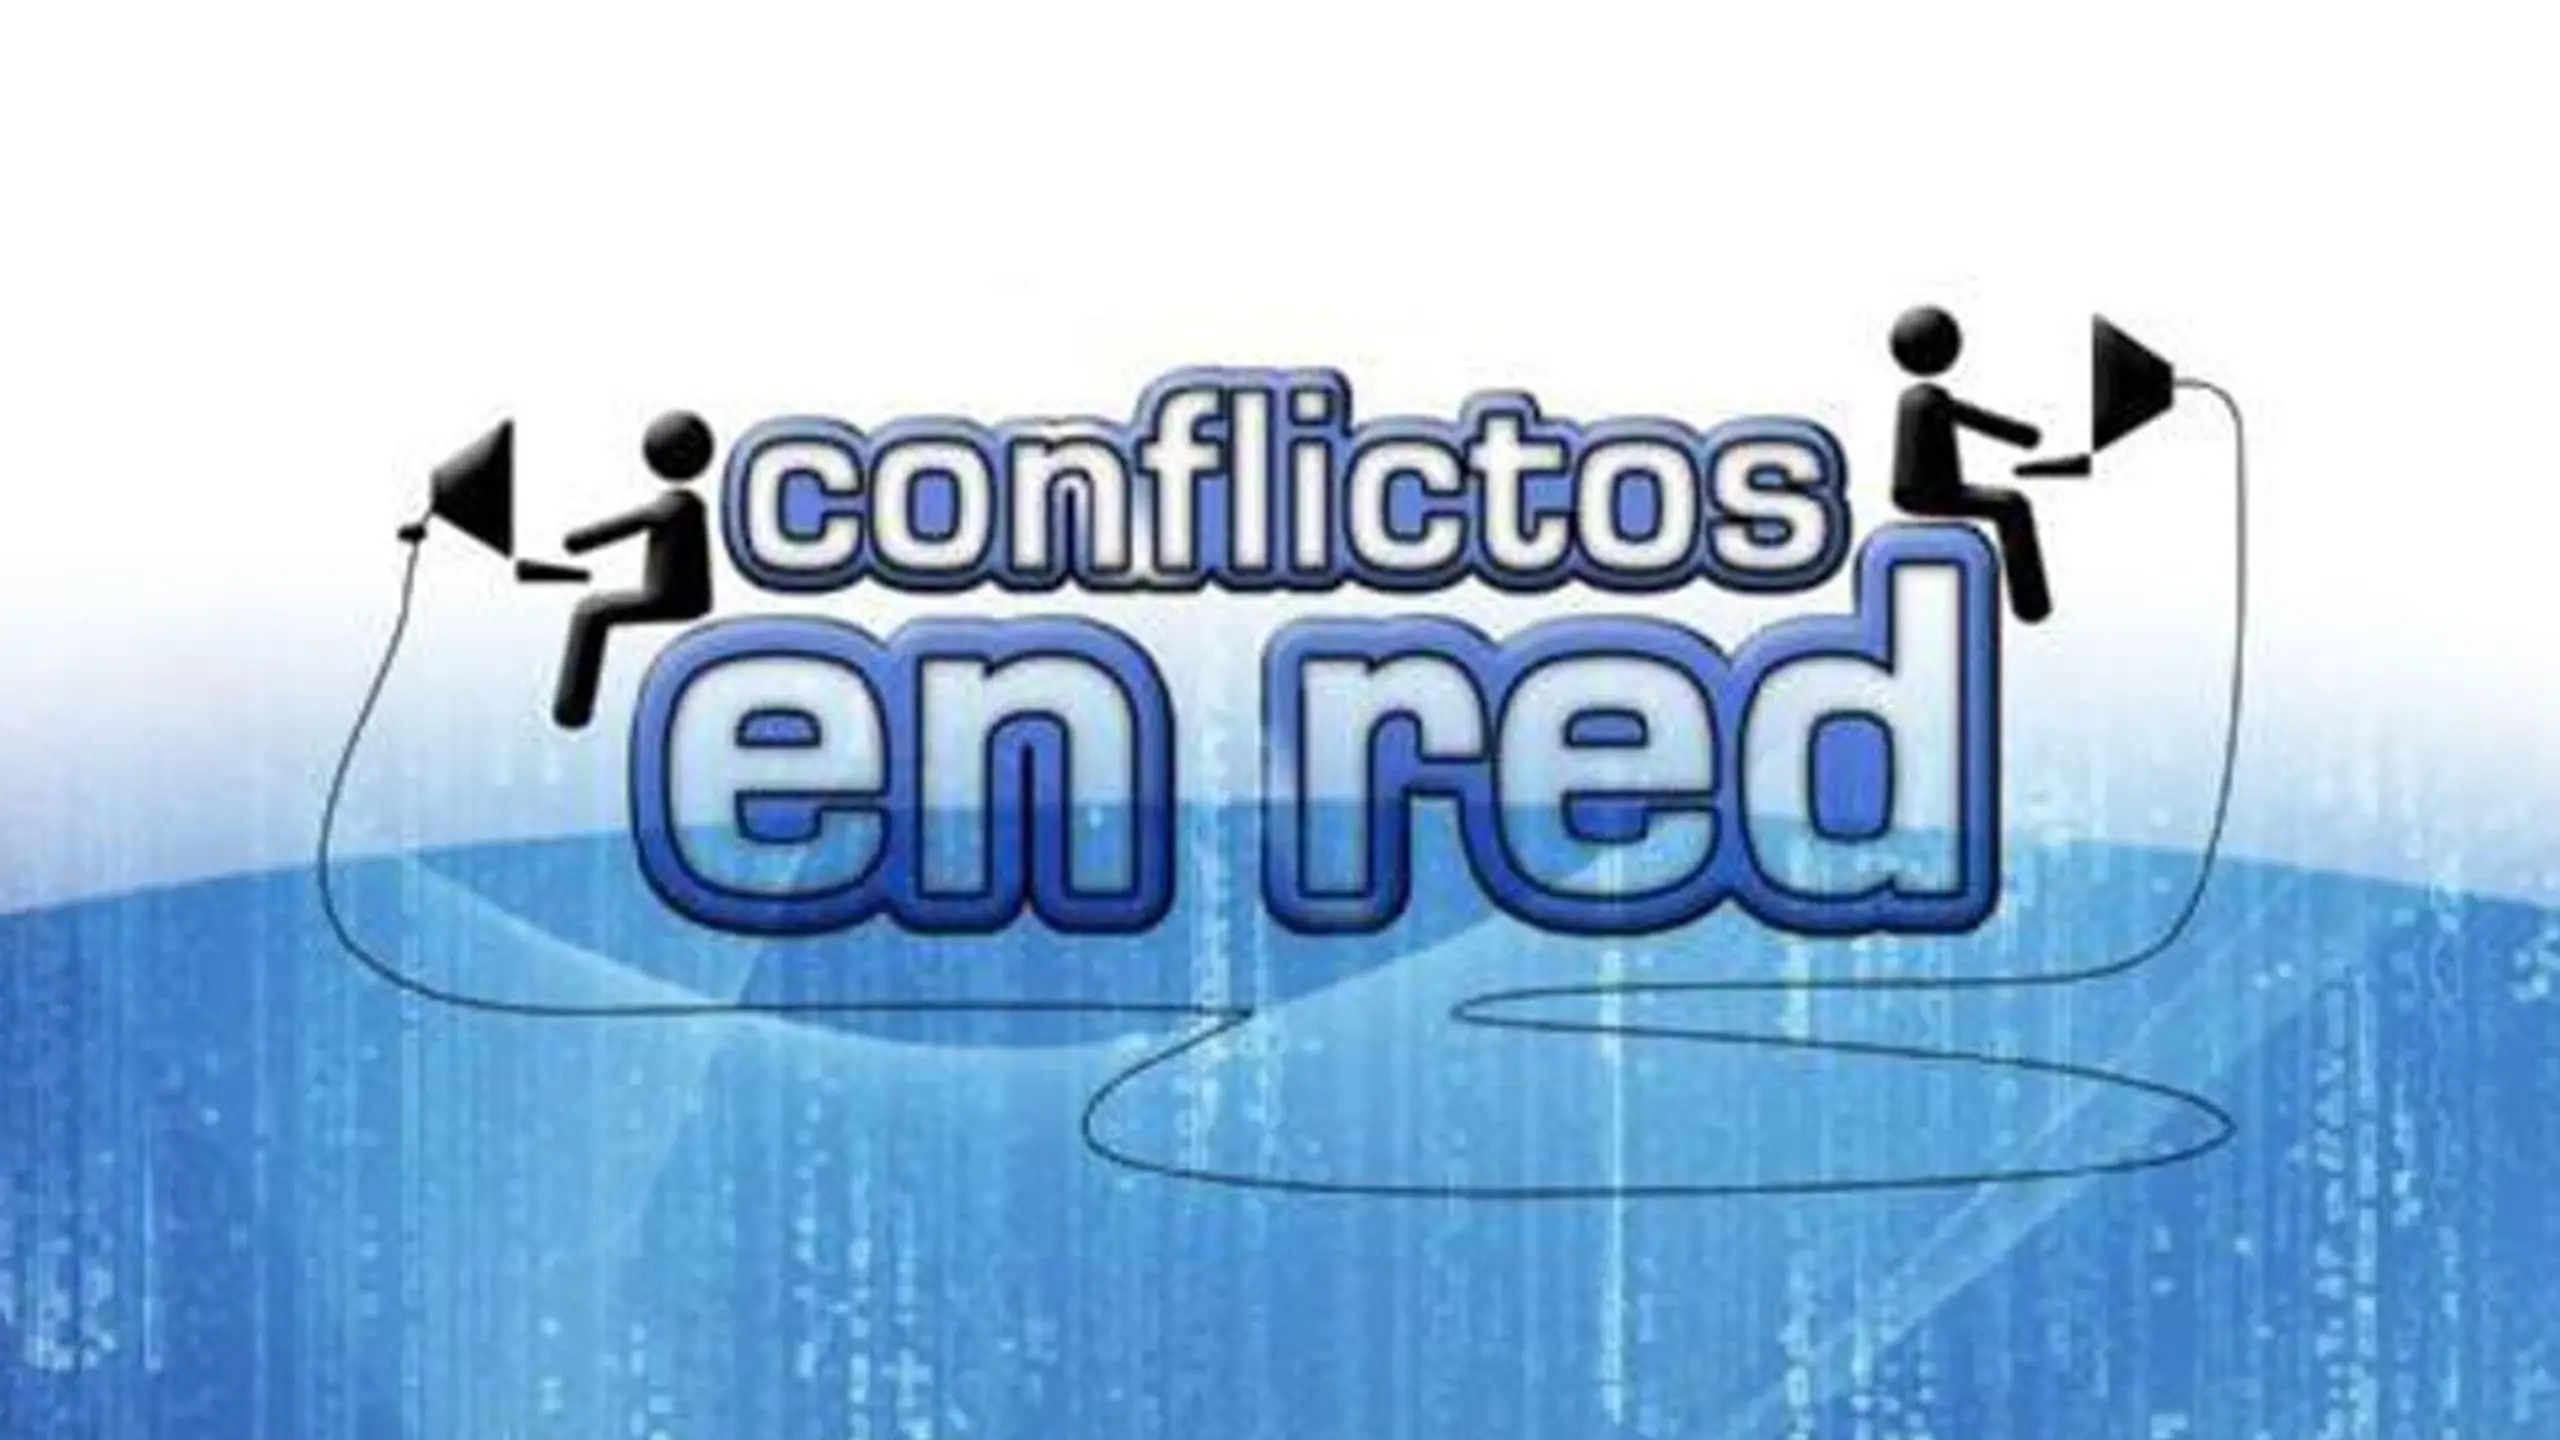 Conflictos en red